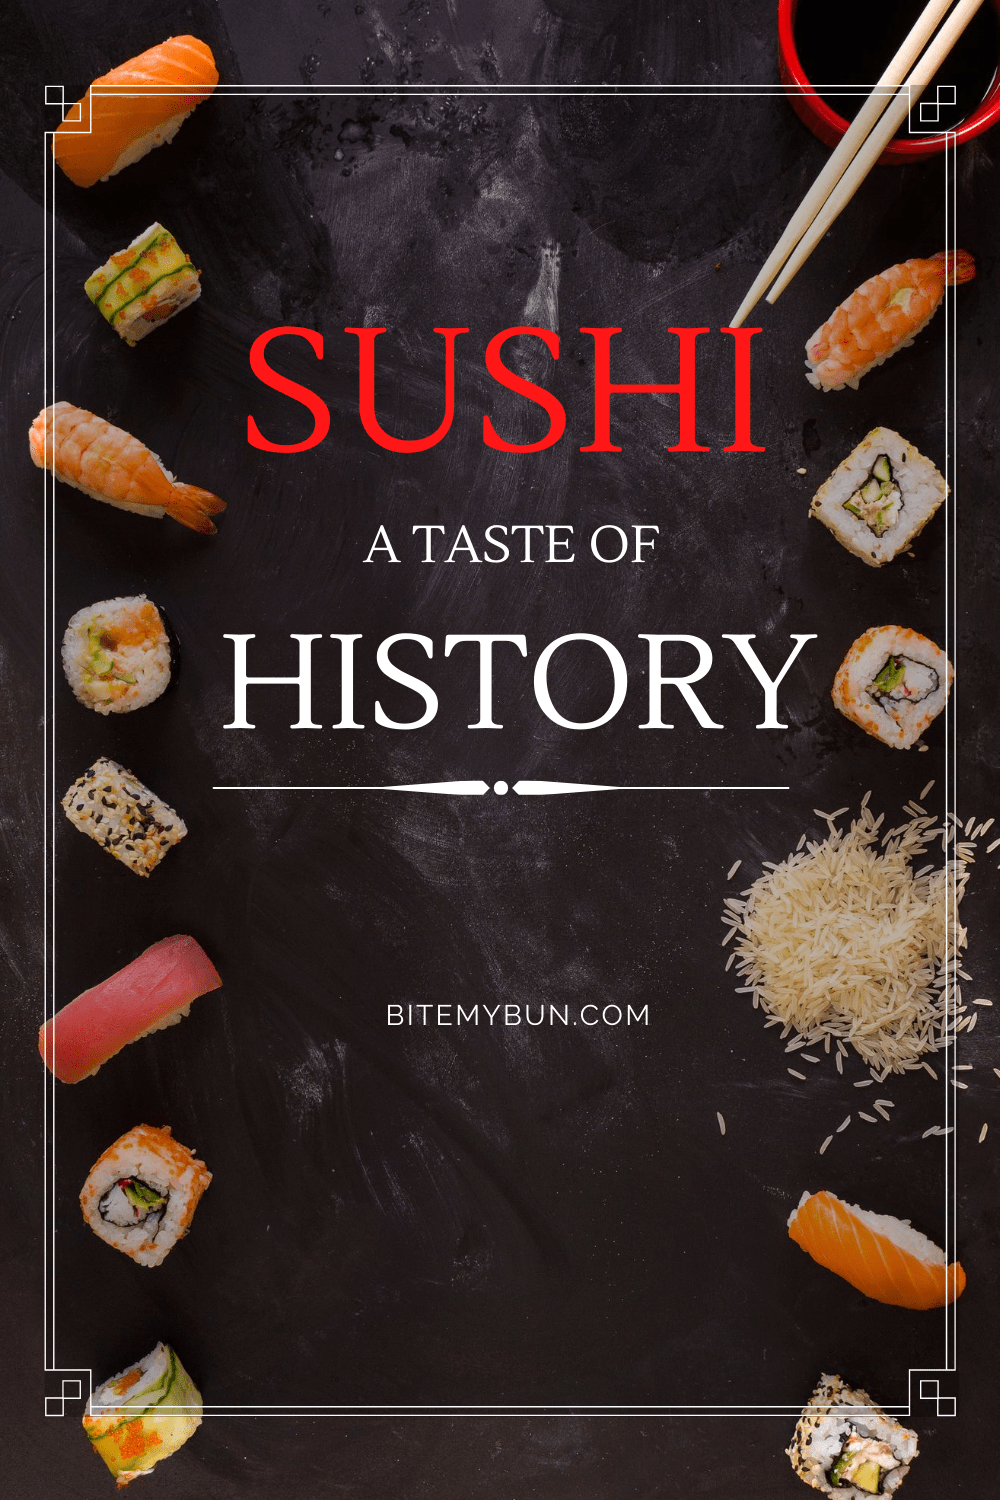 Historia del sushi